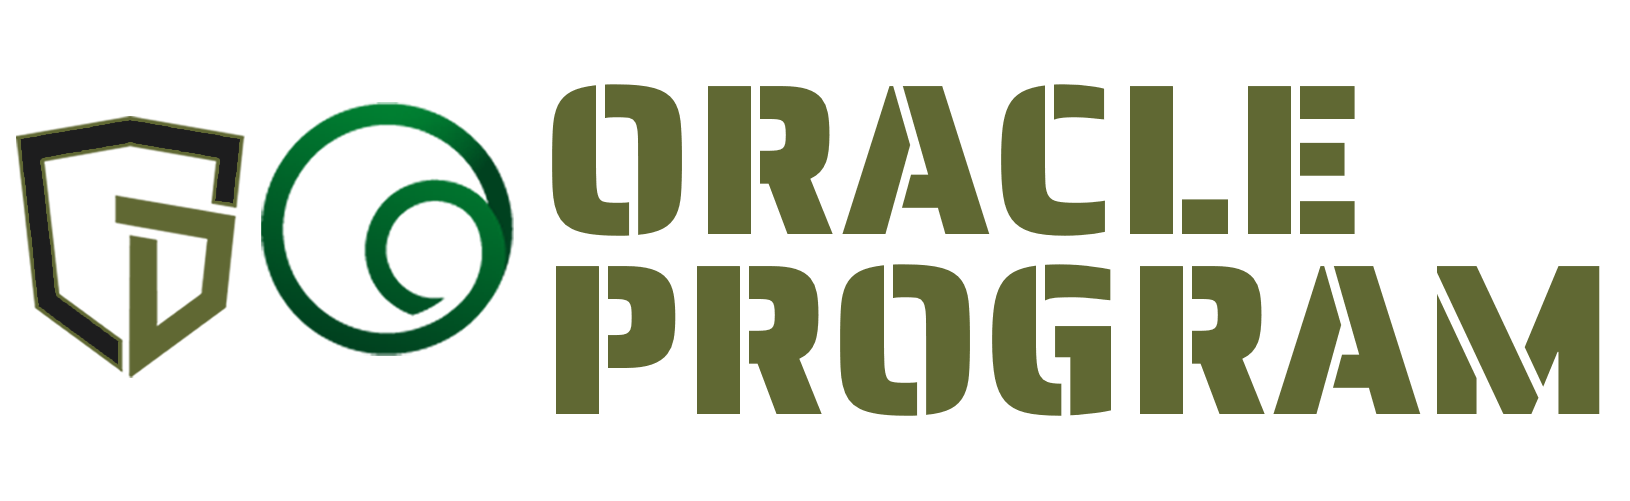 Oracle-program-logos-main